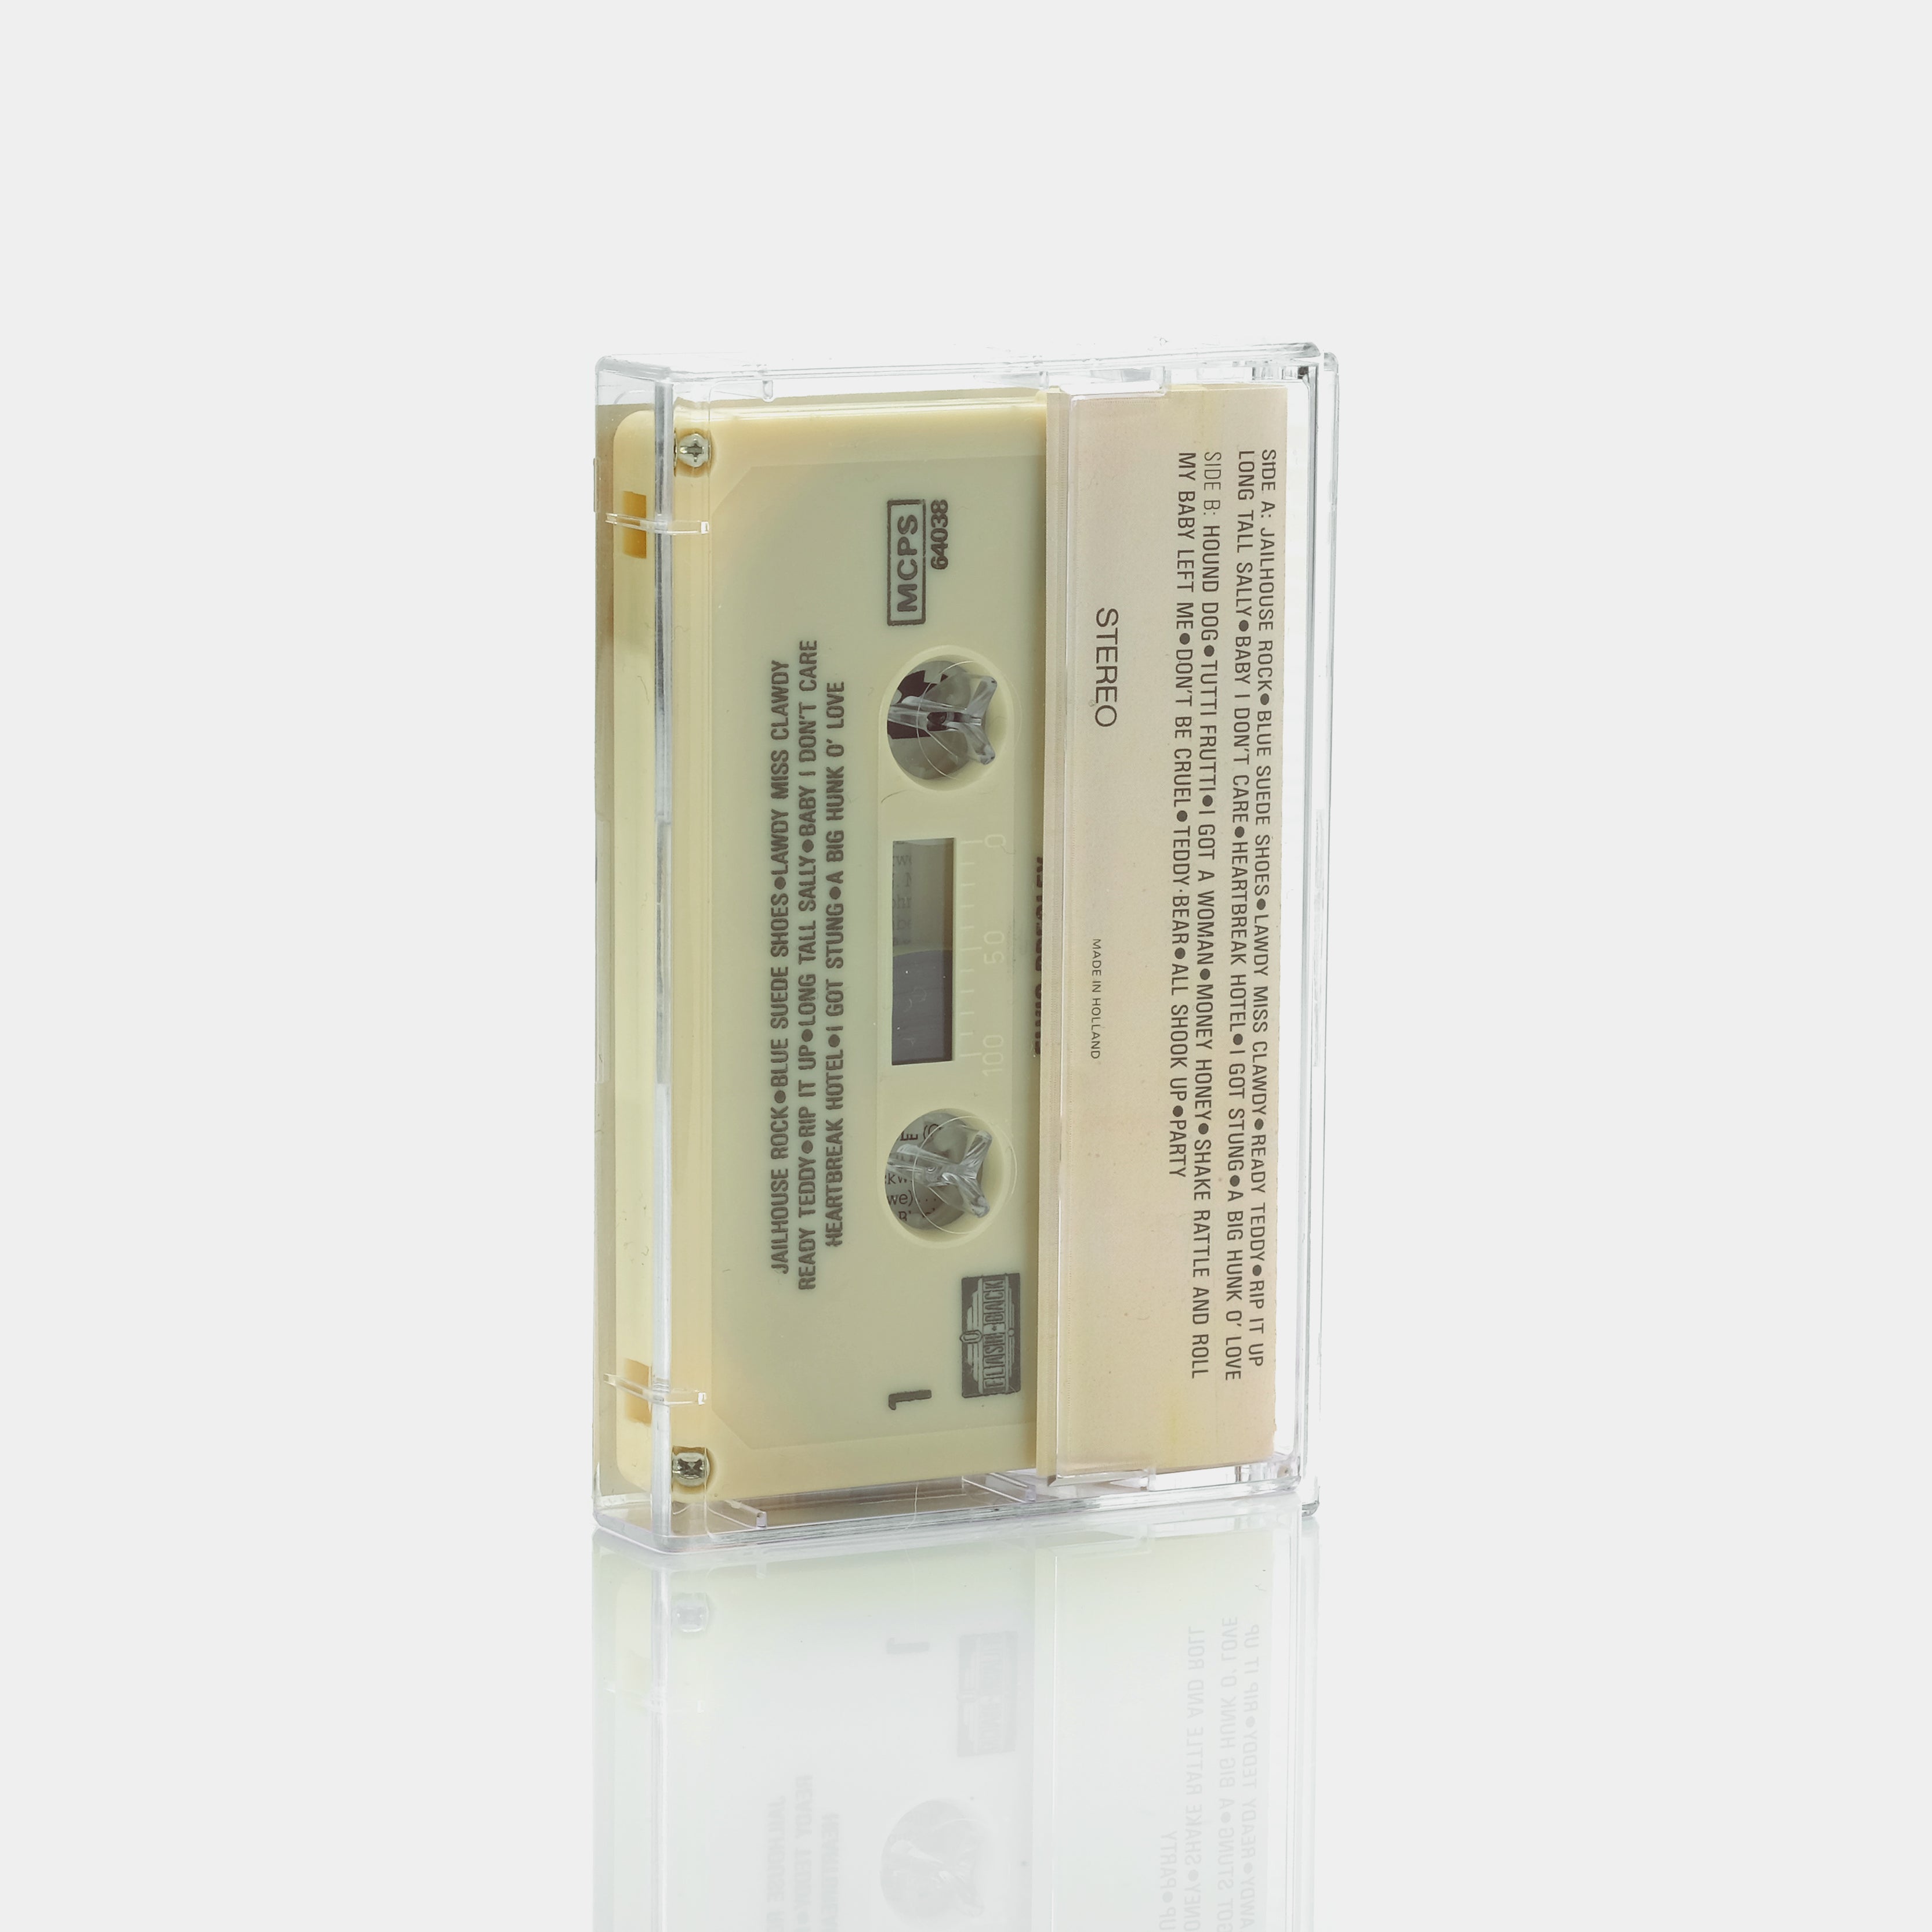 Elvis Presley - 20 Rock & Roll Hits Cassette Tape